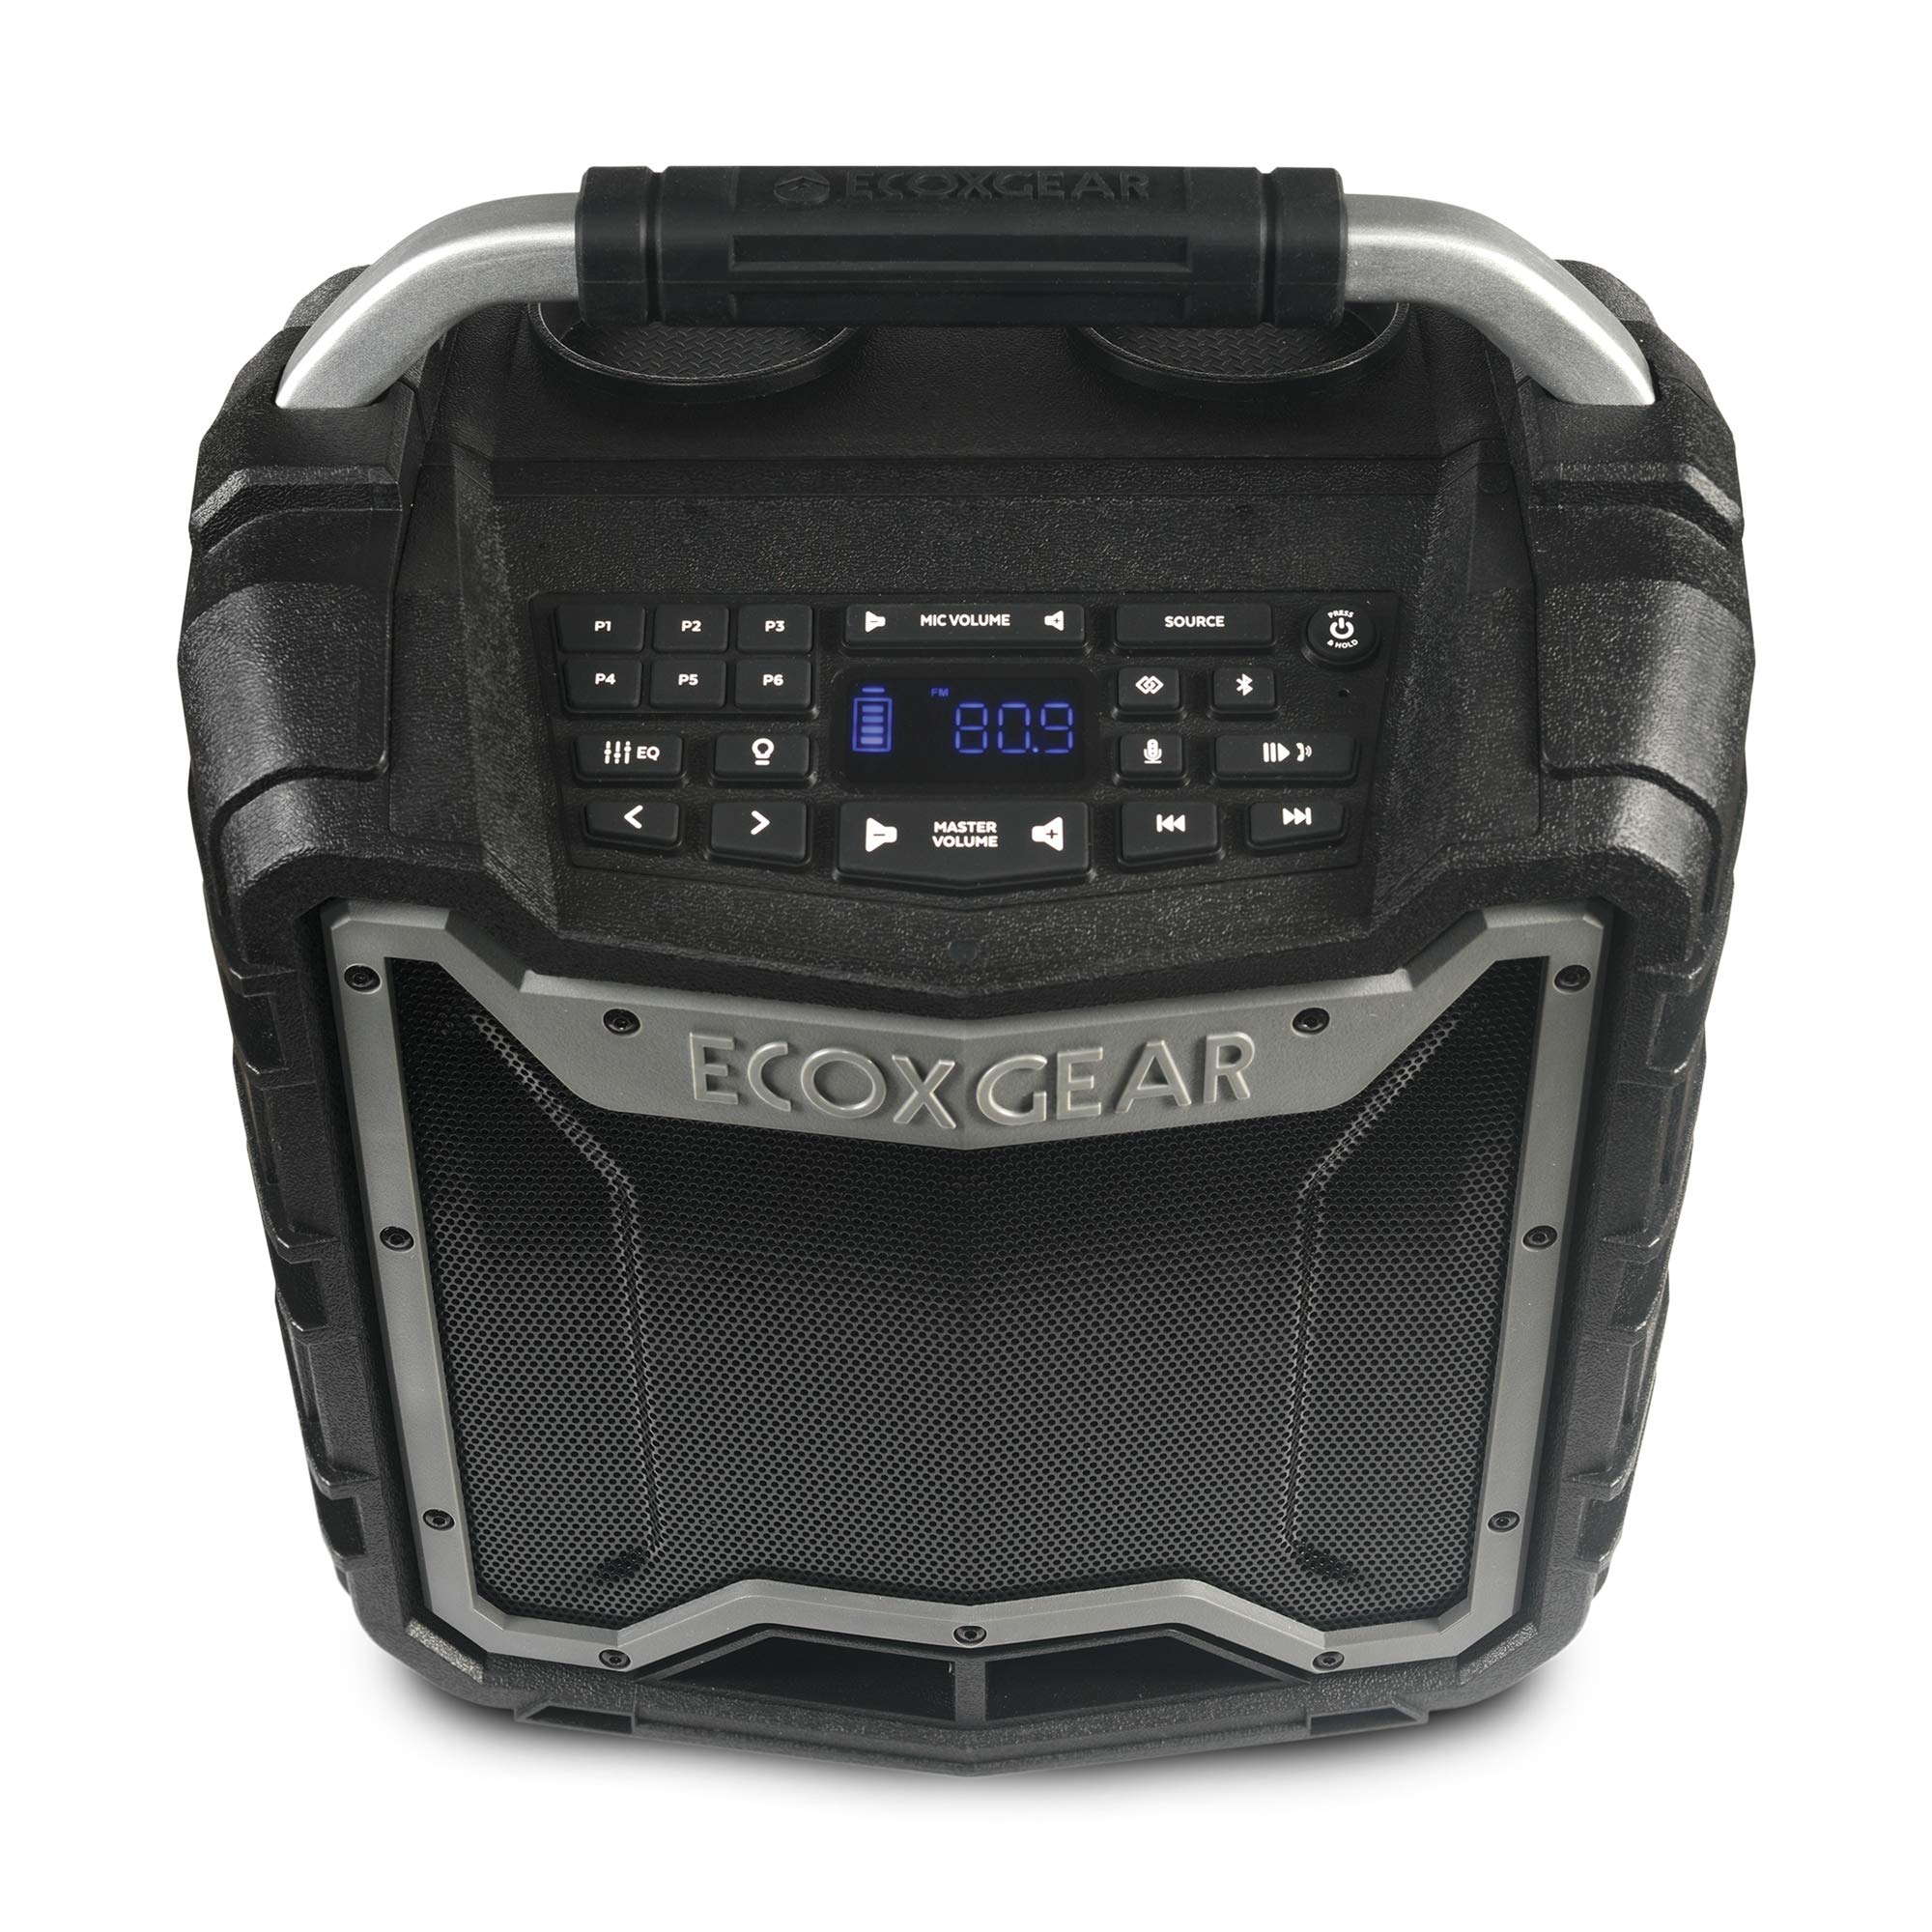 ECOXGEAR EcoTrek GDI-EXTRK210 متين مقاوم للماء عائم محمول يعمل بالبلوتوث لاسلكي 100 وات مكبر صوت استريو ذكي ونظام PA (رمادي)